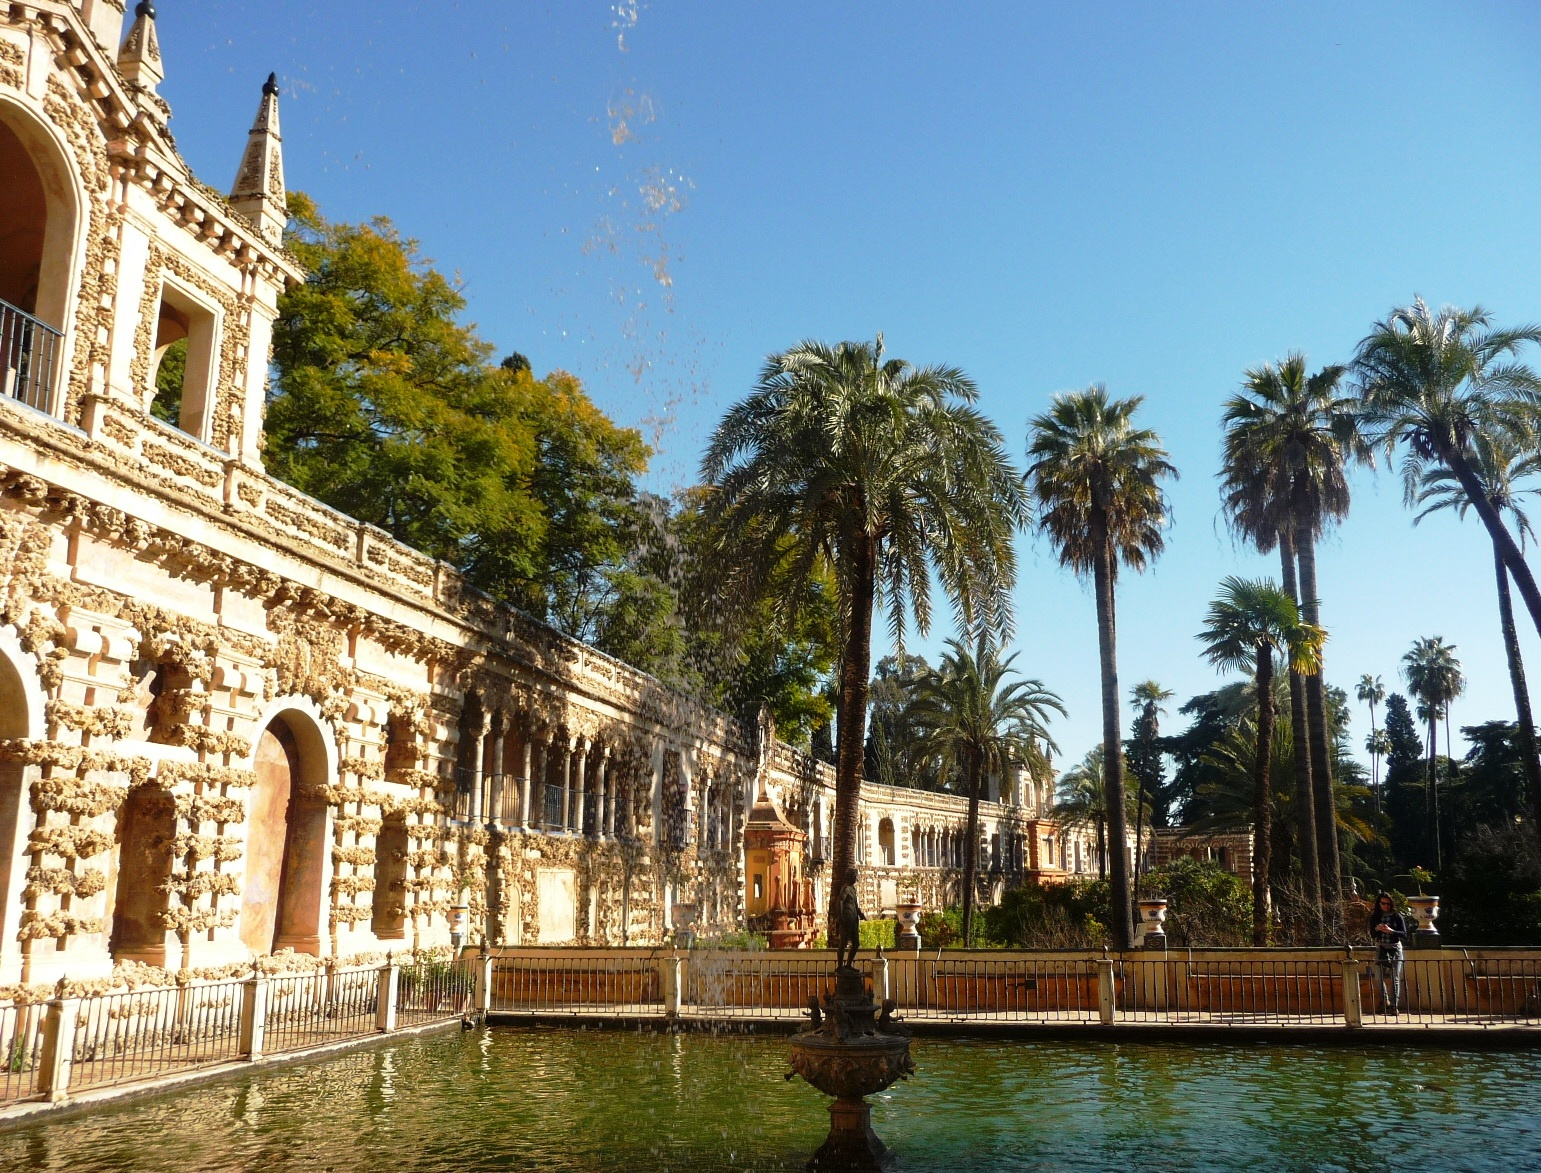 Sevilla - Alcázar